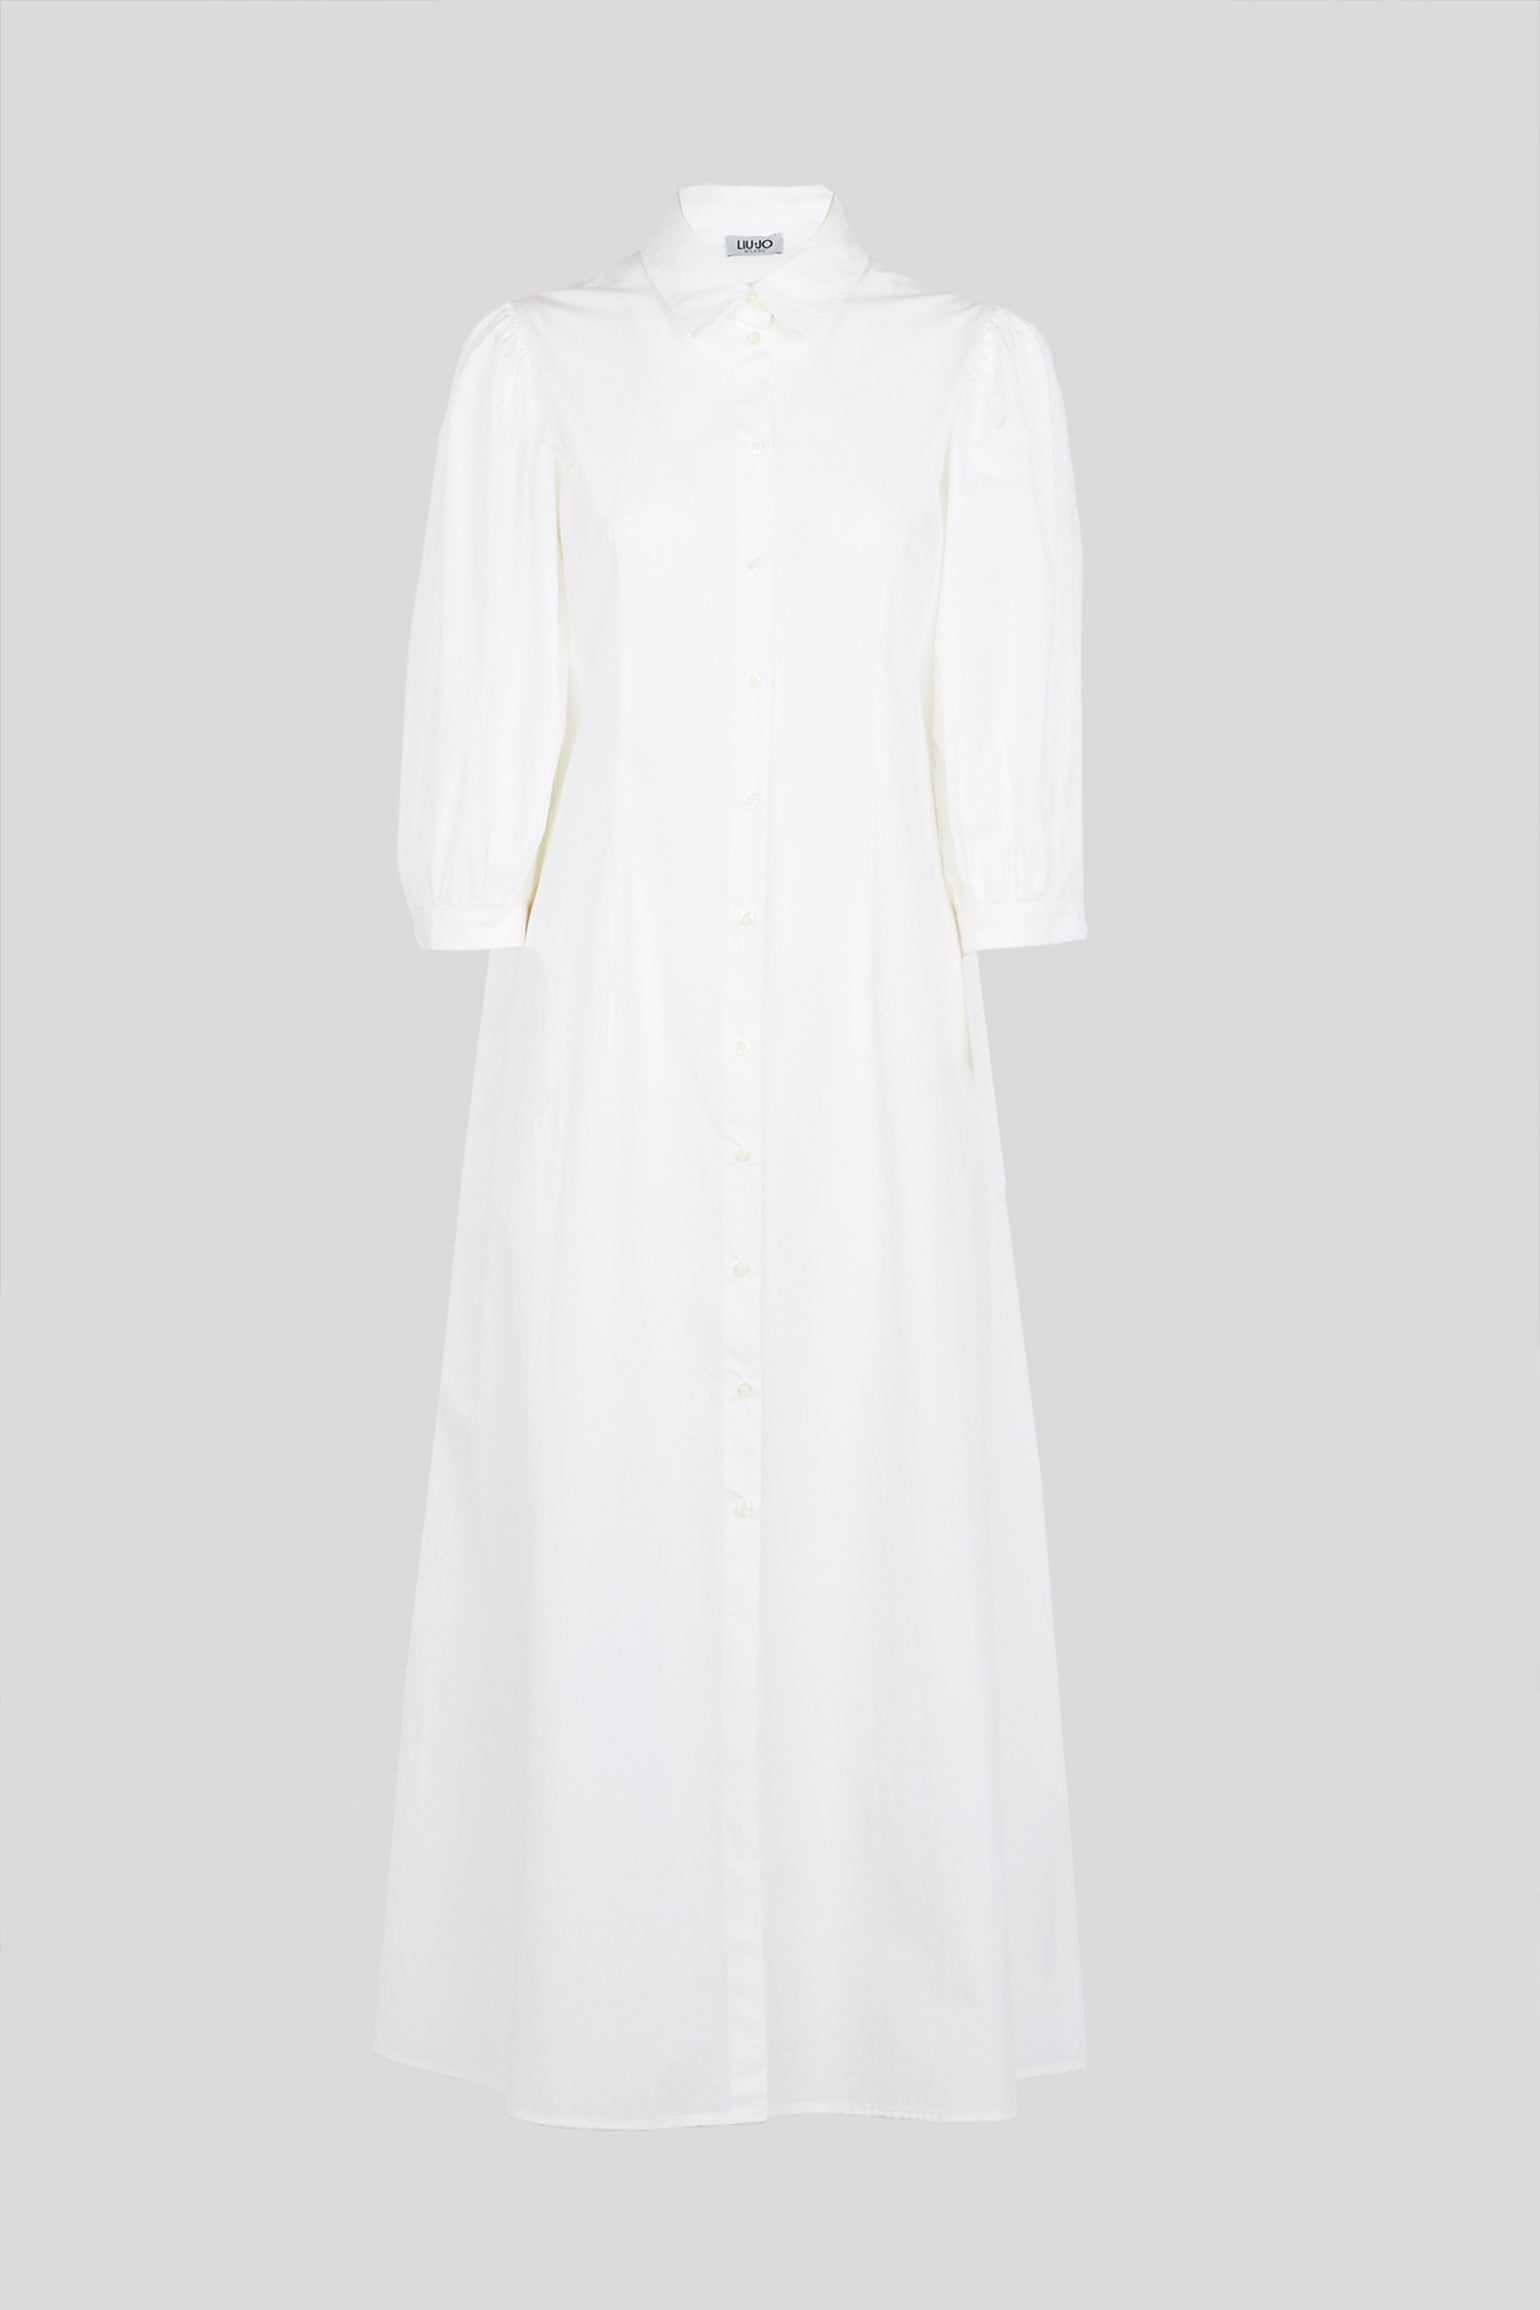 LIU JO White Poplin Long Dress